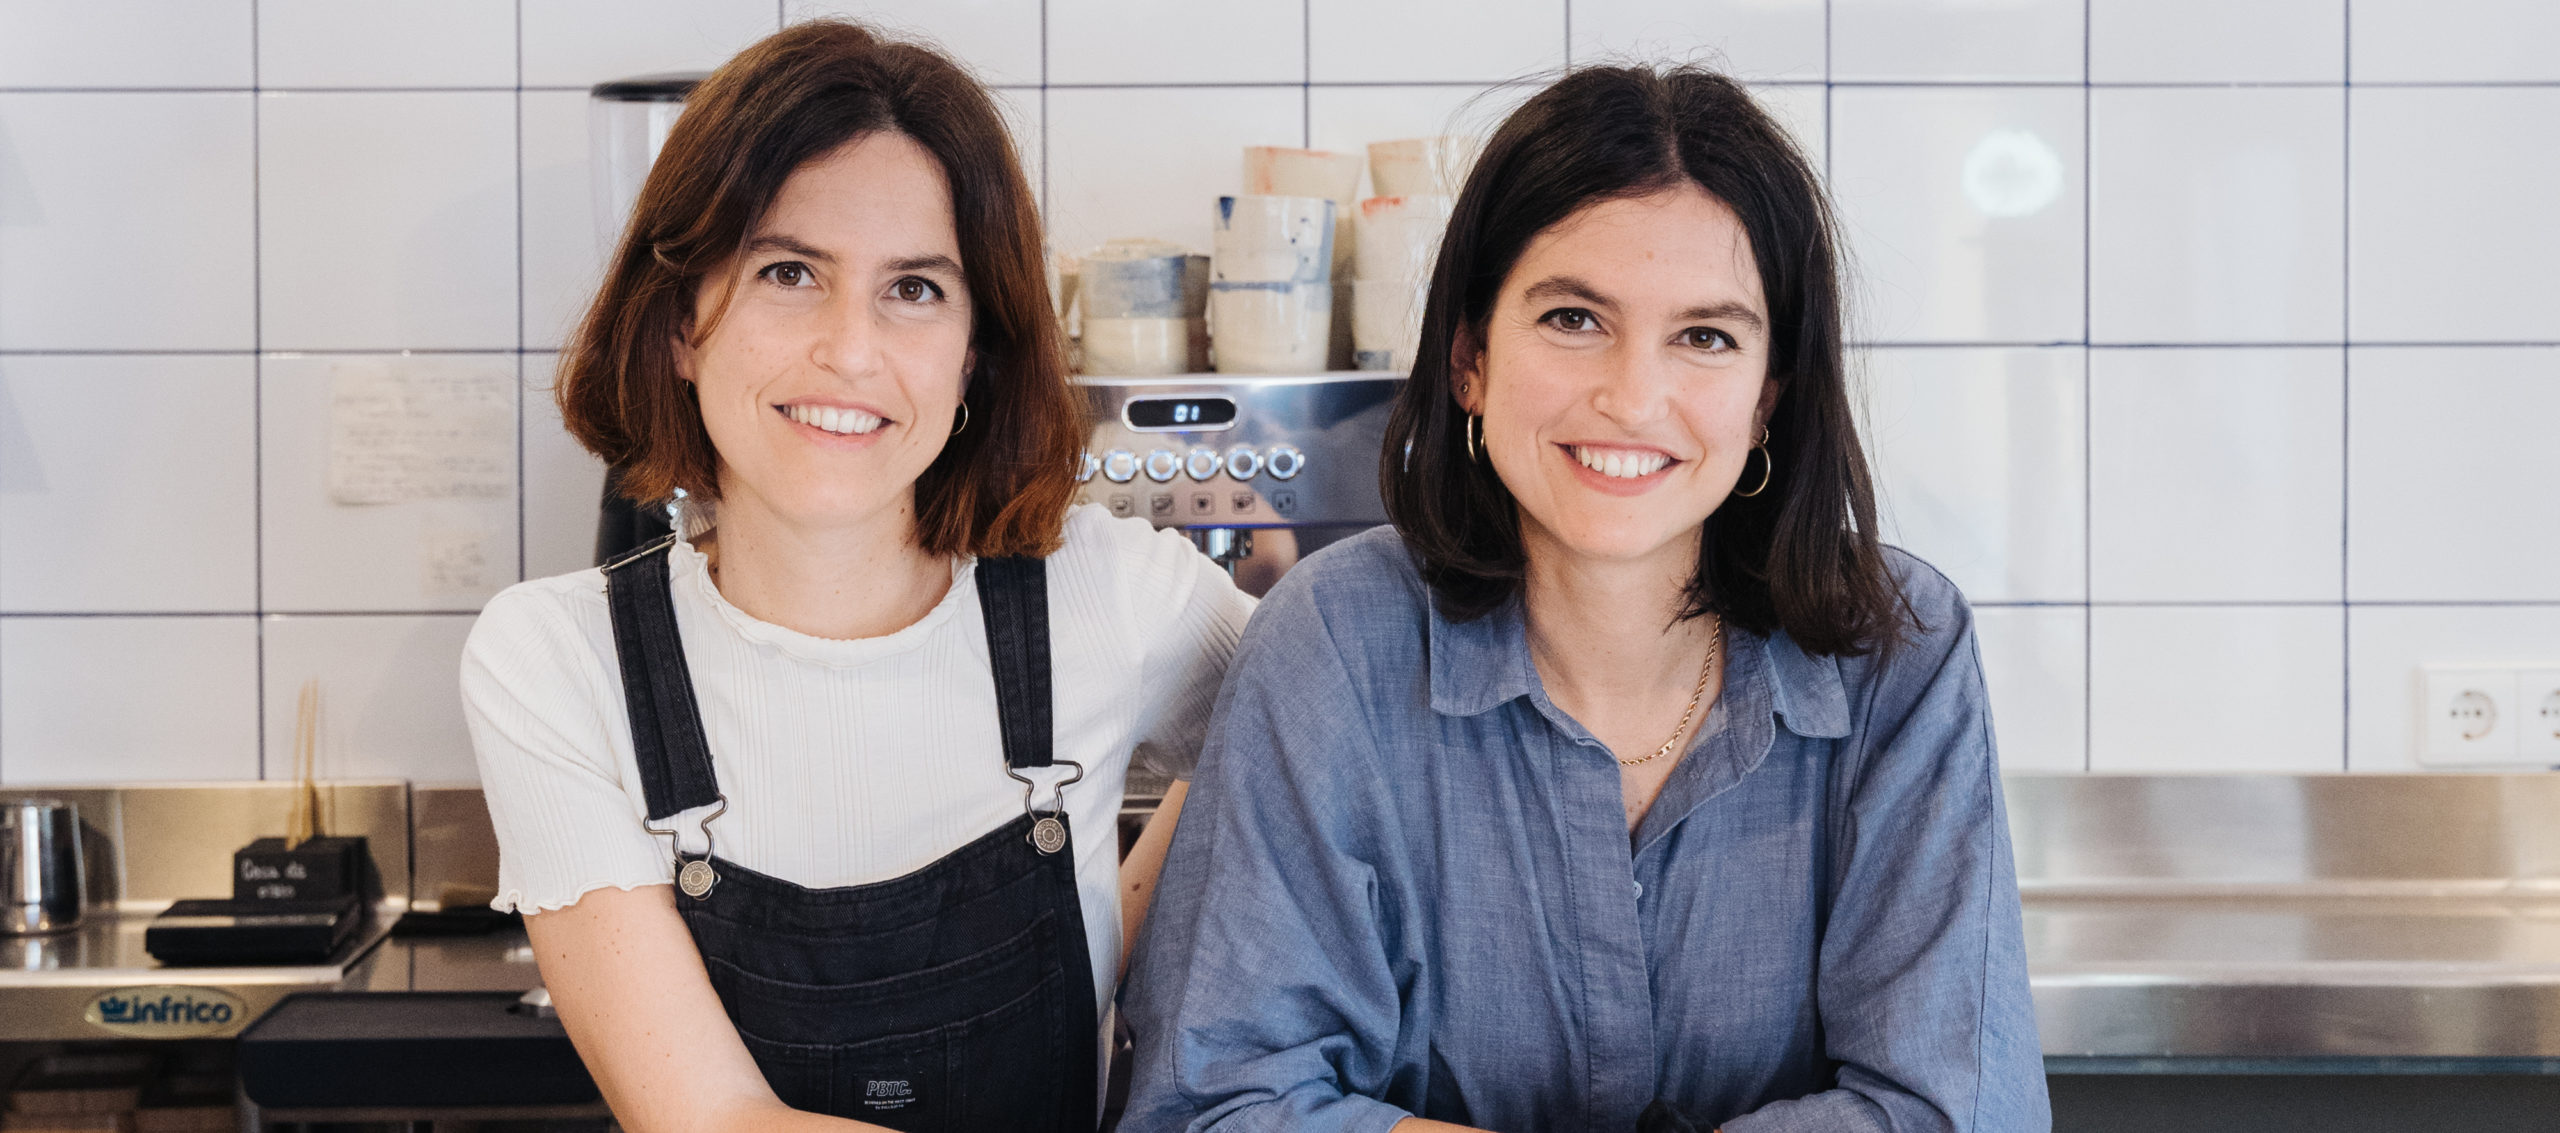 CAPICÚA: Twee tweelingen, beiden afgestudeerd in de rechten, eigenaren van een succesvol cateringbedrijf